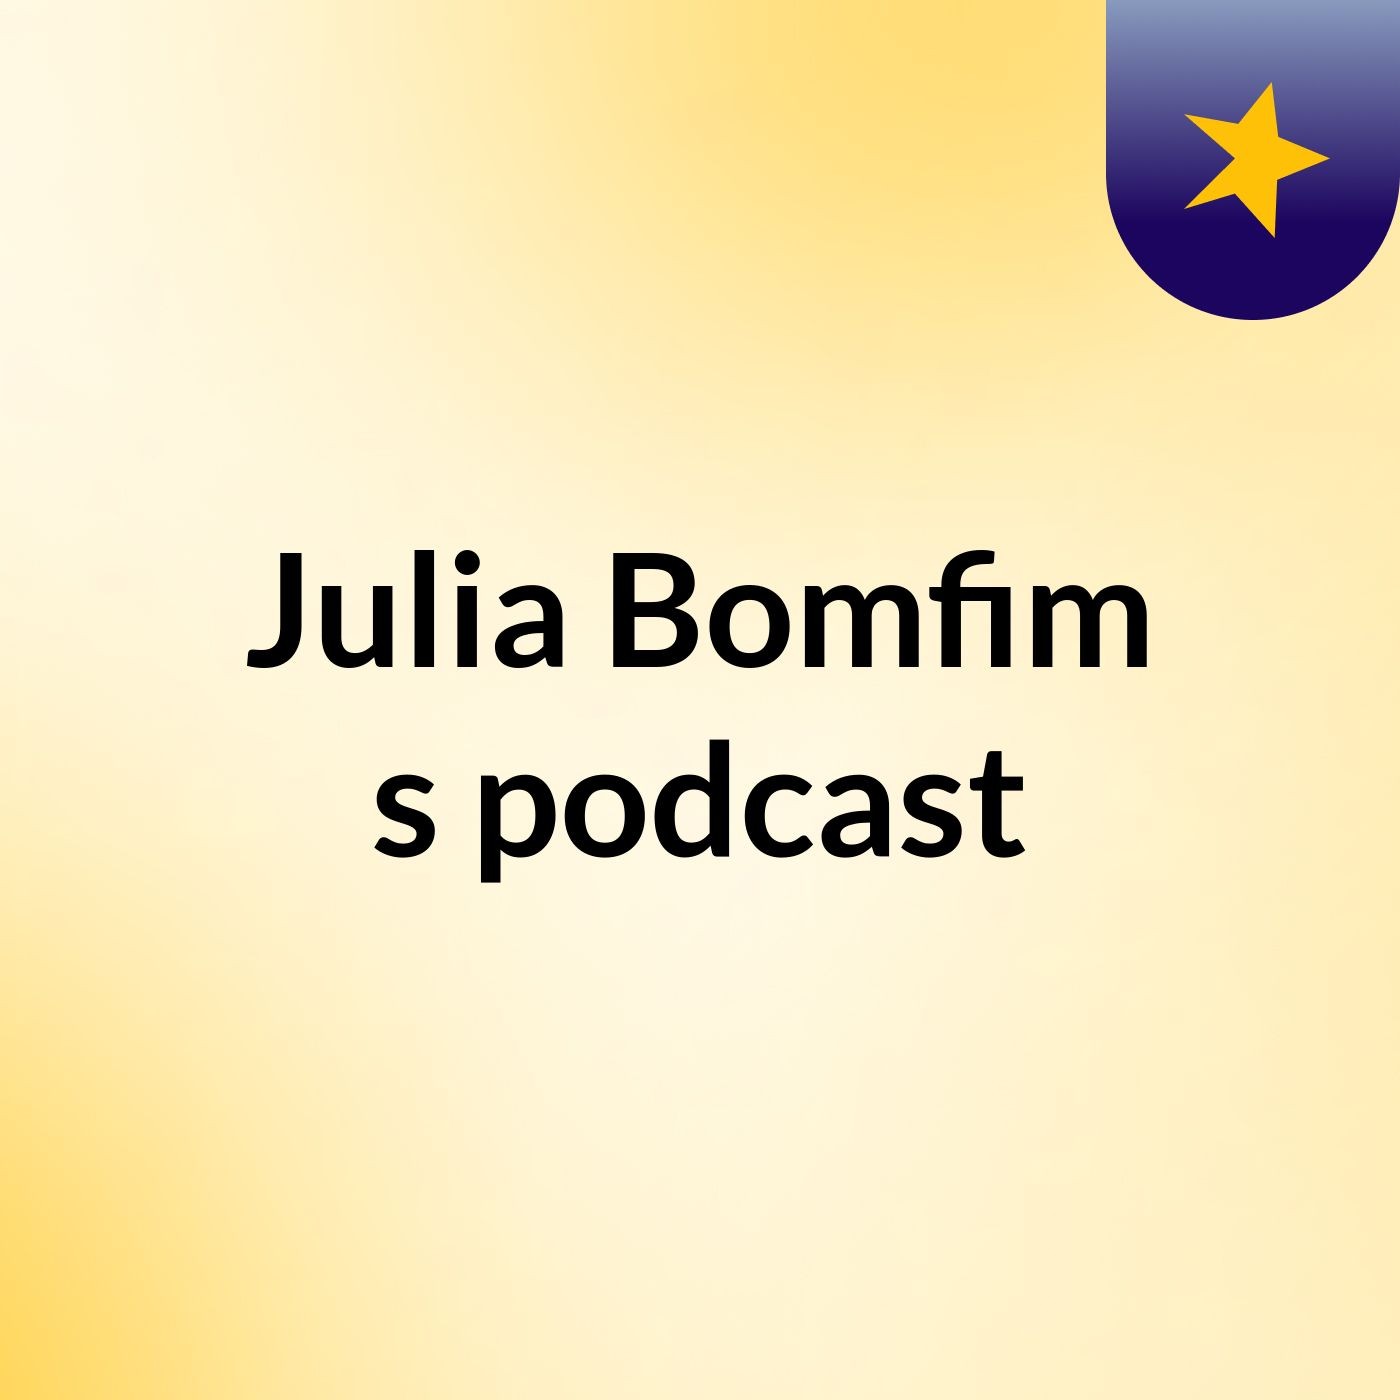 Julia Bomfim's podcast